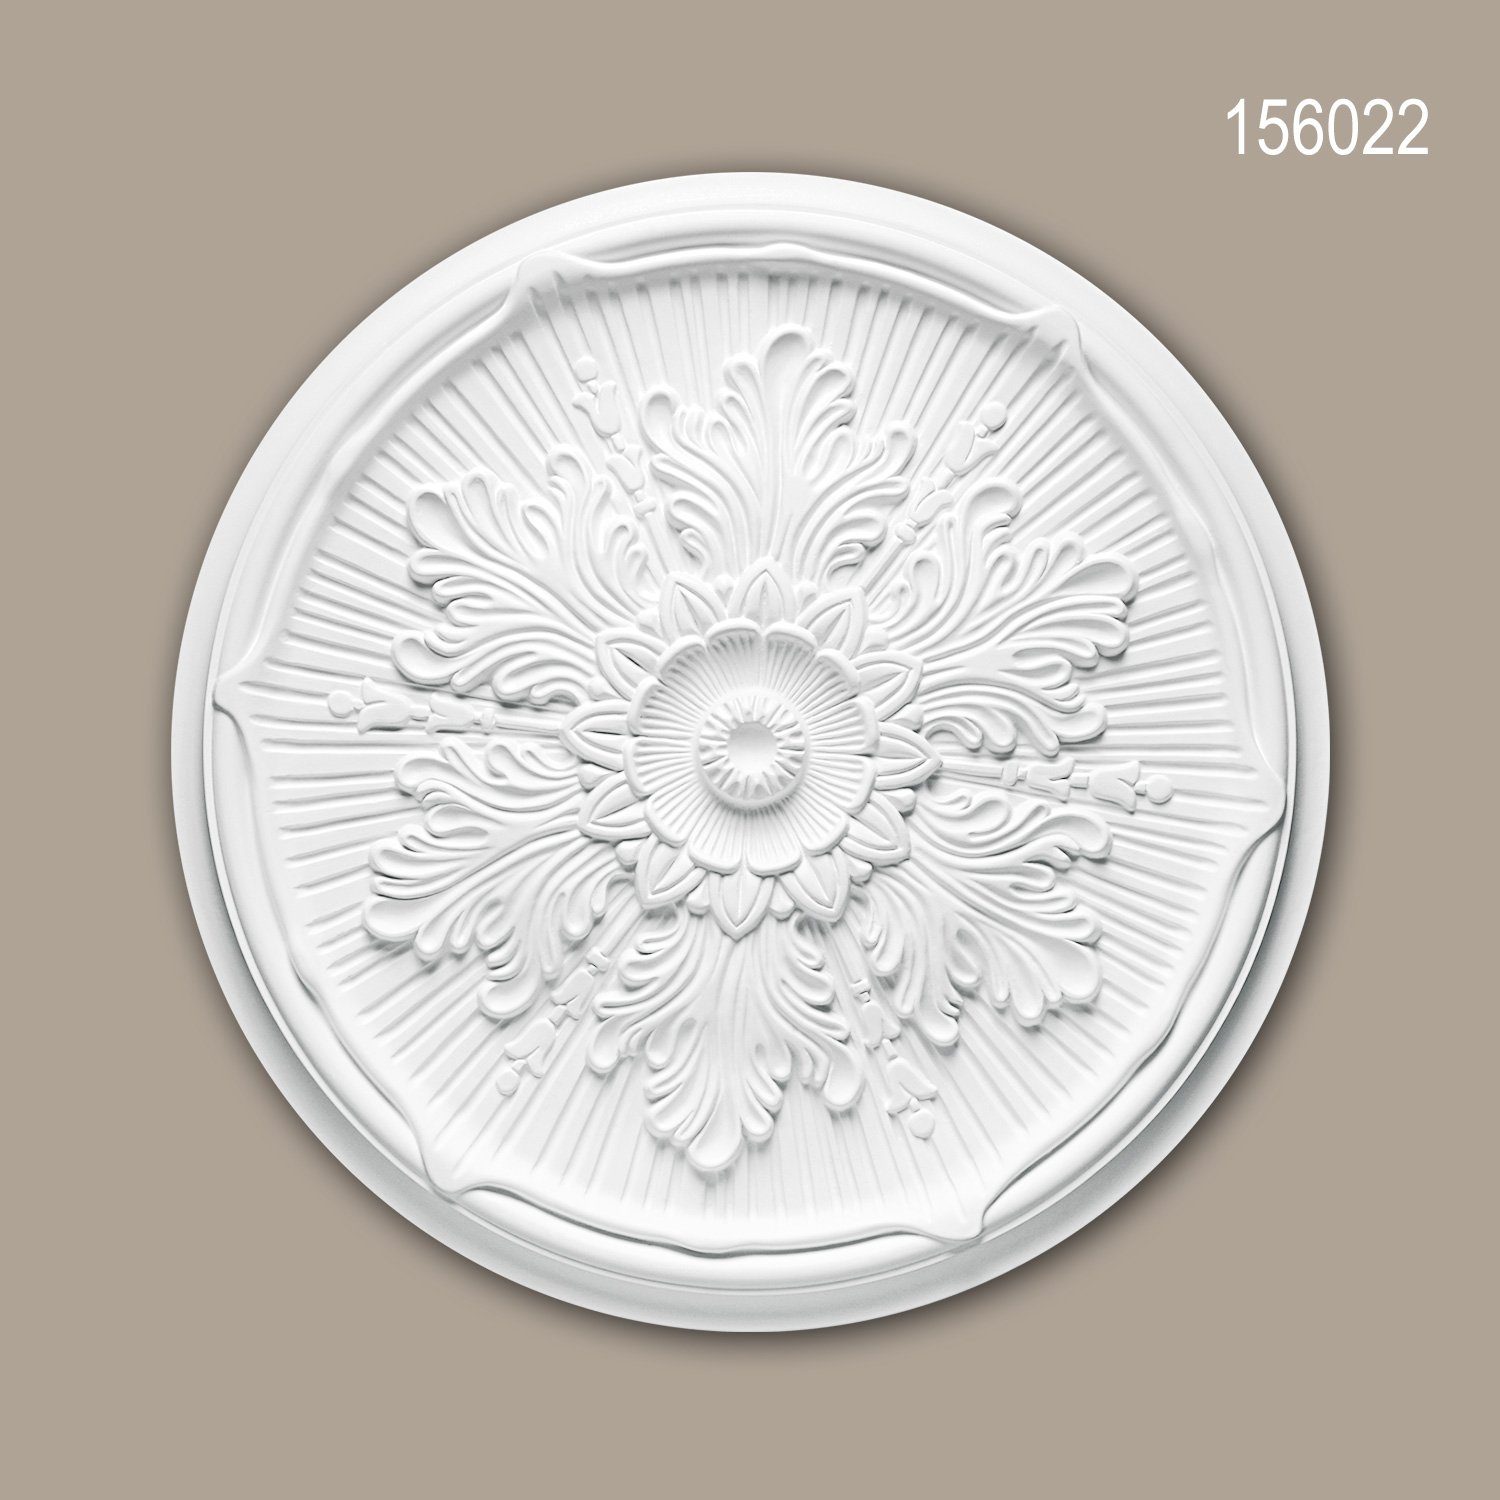 Profhome Decken-Rosette 156022 (Rosette, 1 St., Deckenrosette, Medallion, Stuckrosette, Deckenelement, Zierelement, Durchmesser 52,5 cm), weiß, vorgrundiert, Stil: Neo-Renaissance